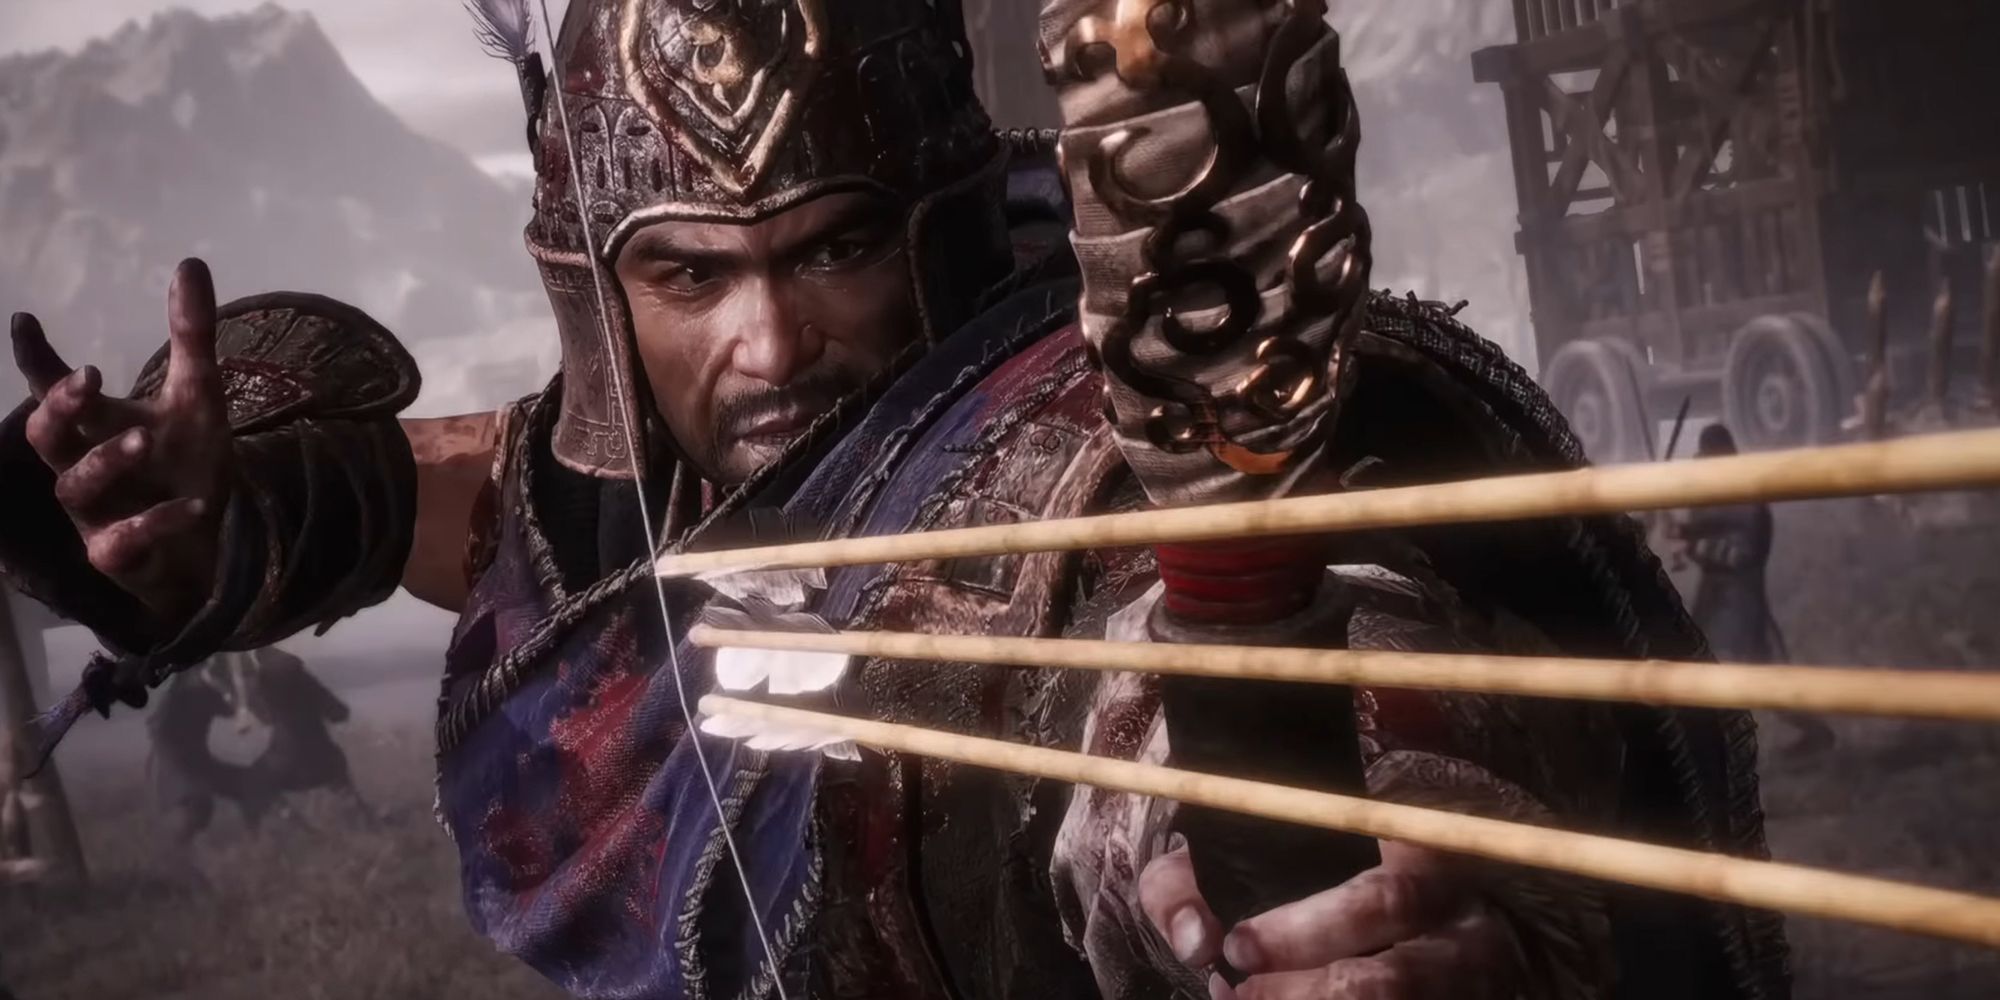 Wo Long Fallen Dynasty - Xiahou Yuan Firing Three Arrows At Once